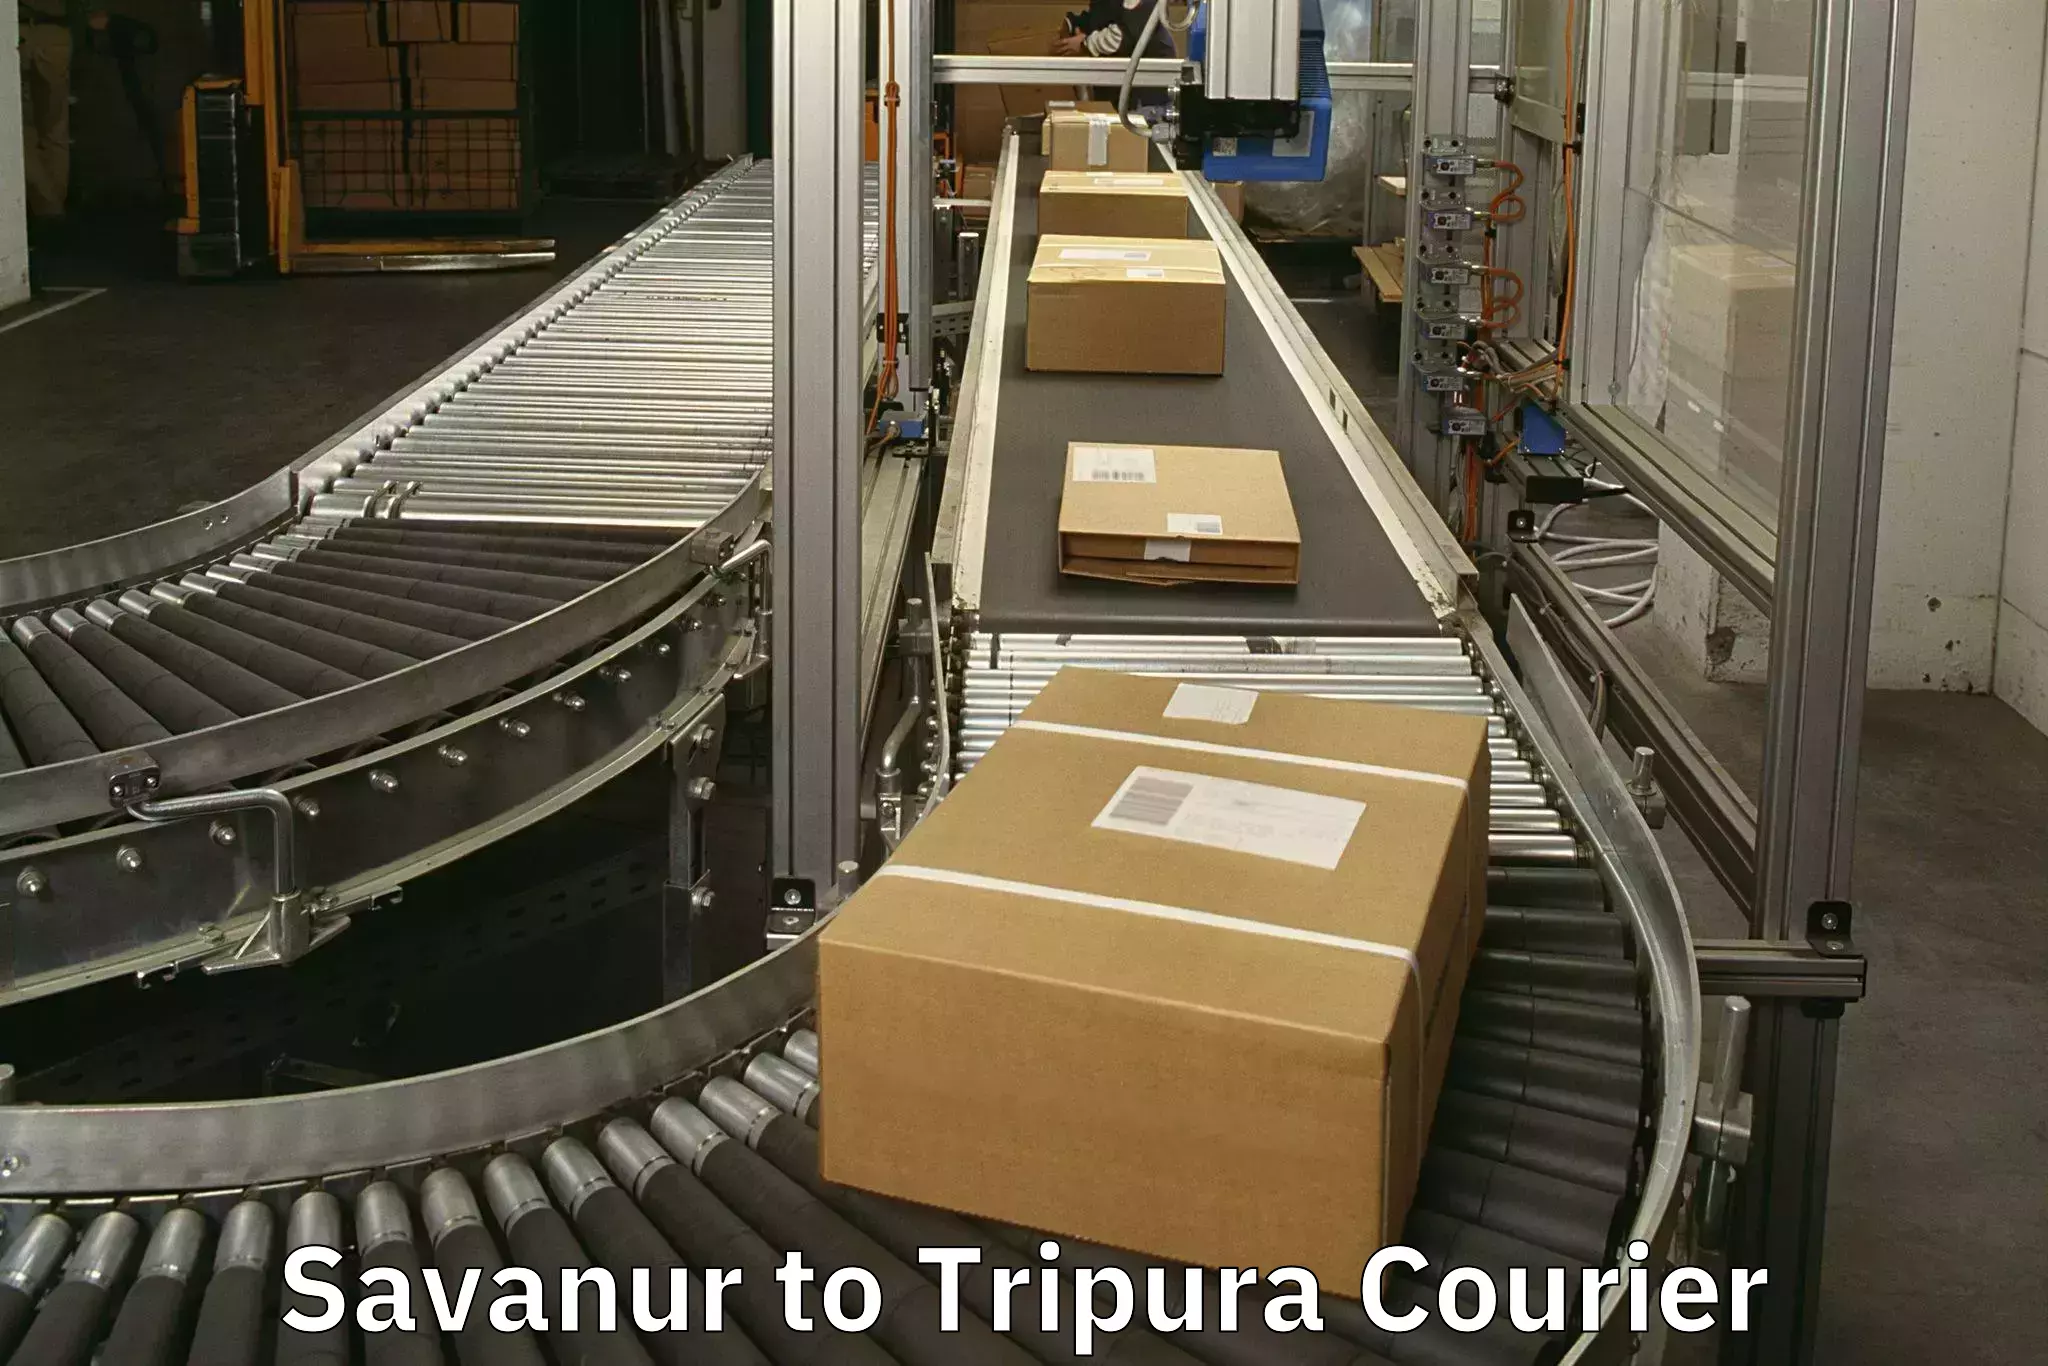 Luggage transport operations Savanur to Udaipur Tripura